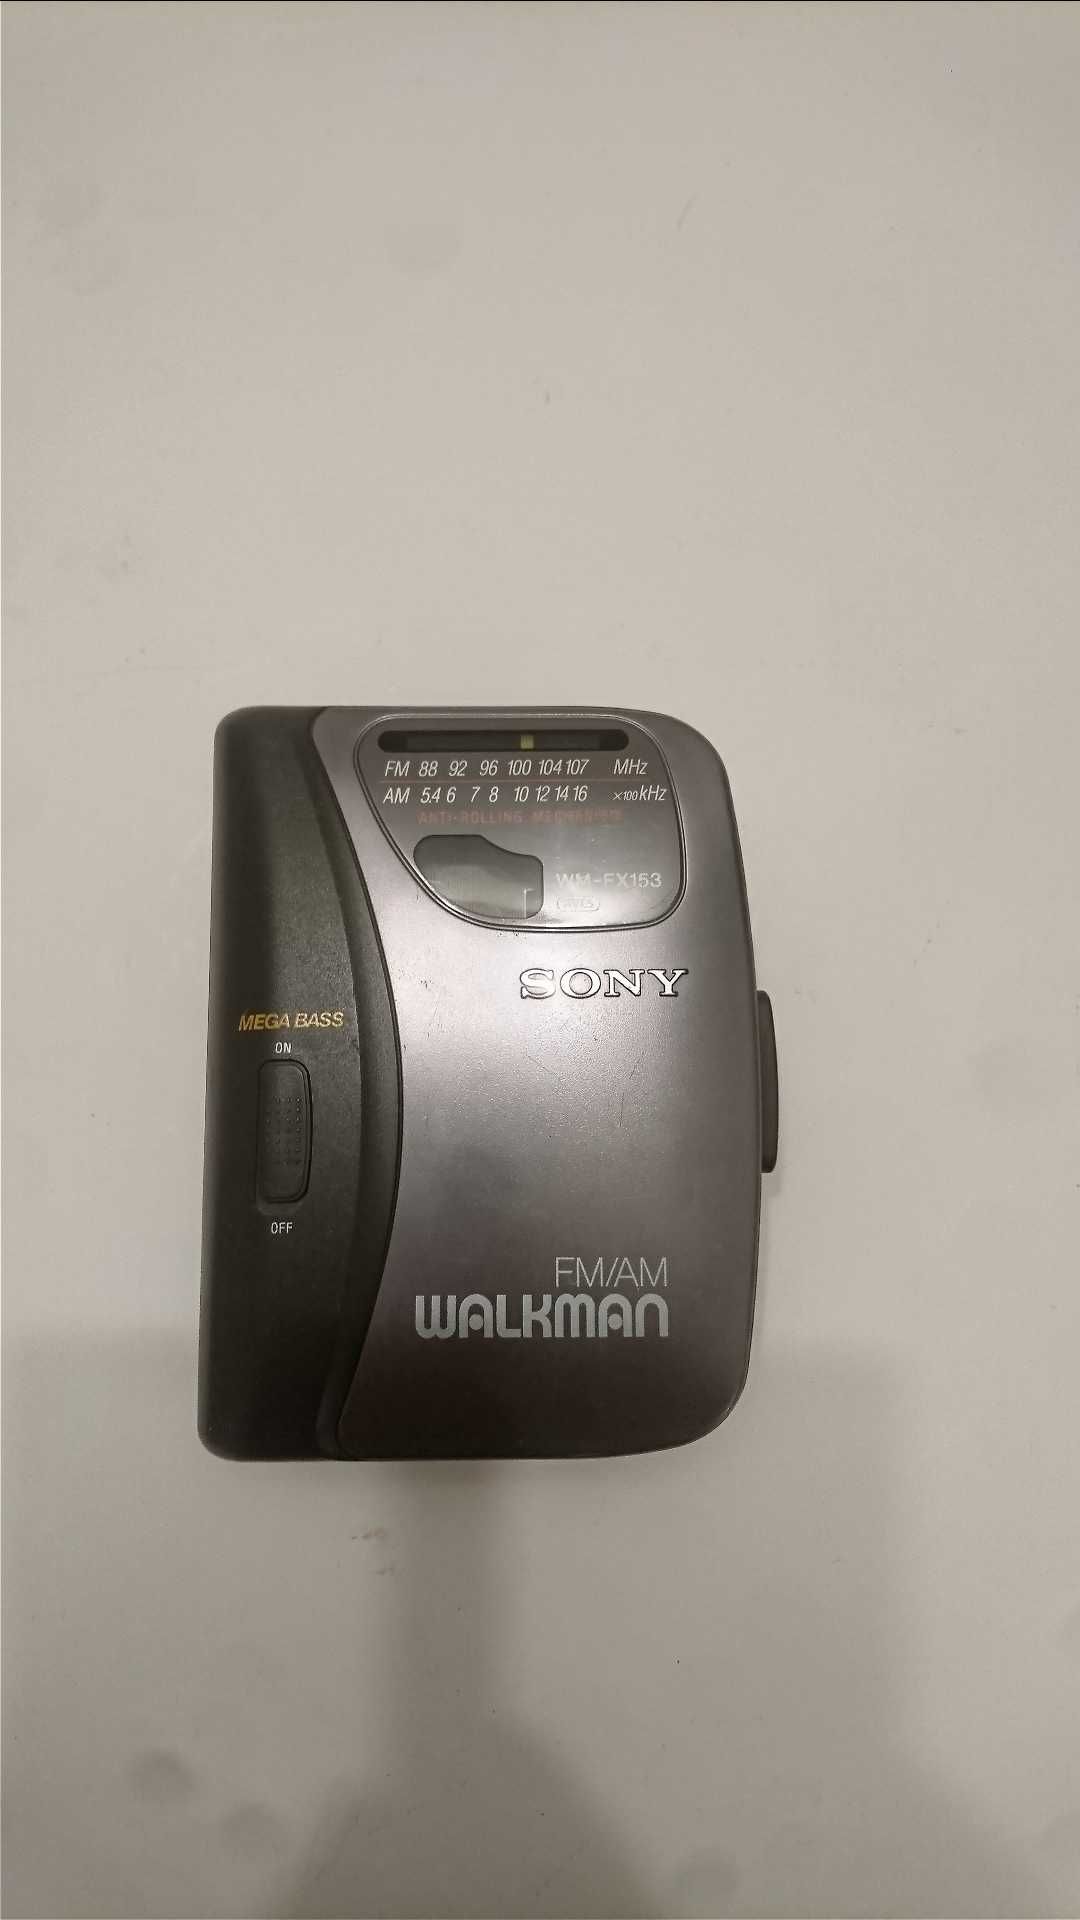 Leitor de cassete Sony Walkman